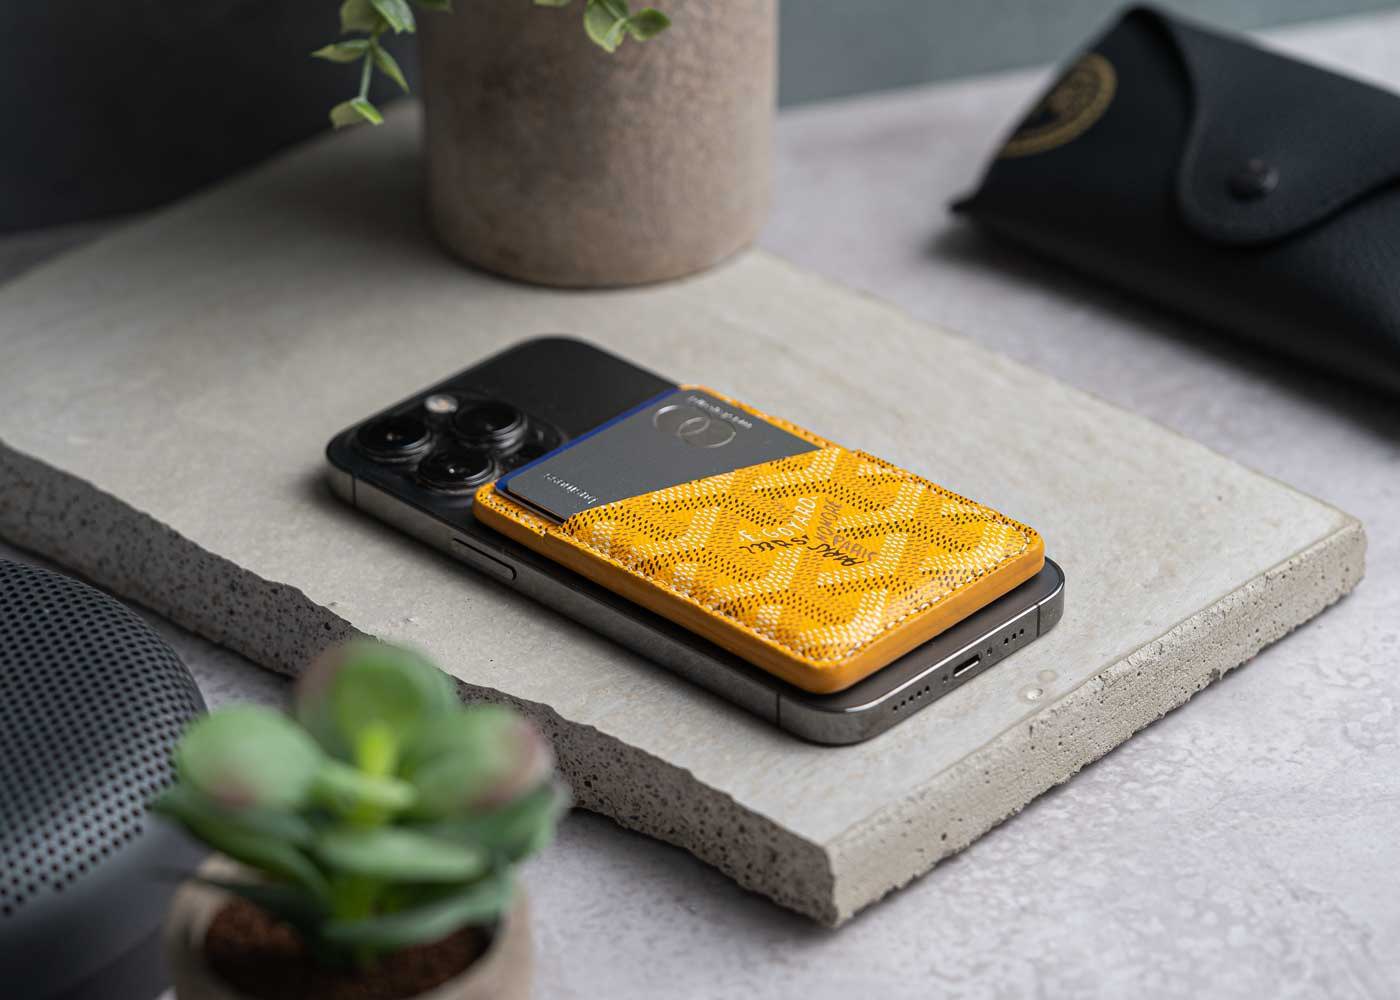 LOUIS VUITTON iPhone 11 Pro Max Wallet Flip Case - Luxury Phone Case Shop